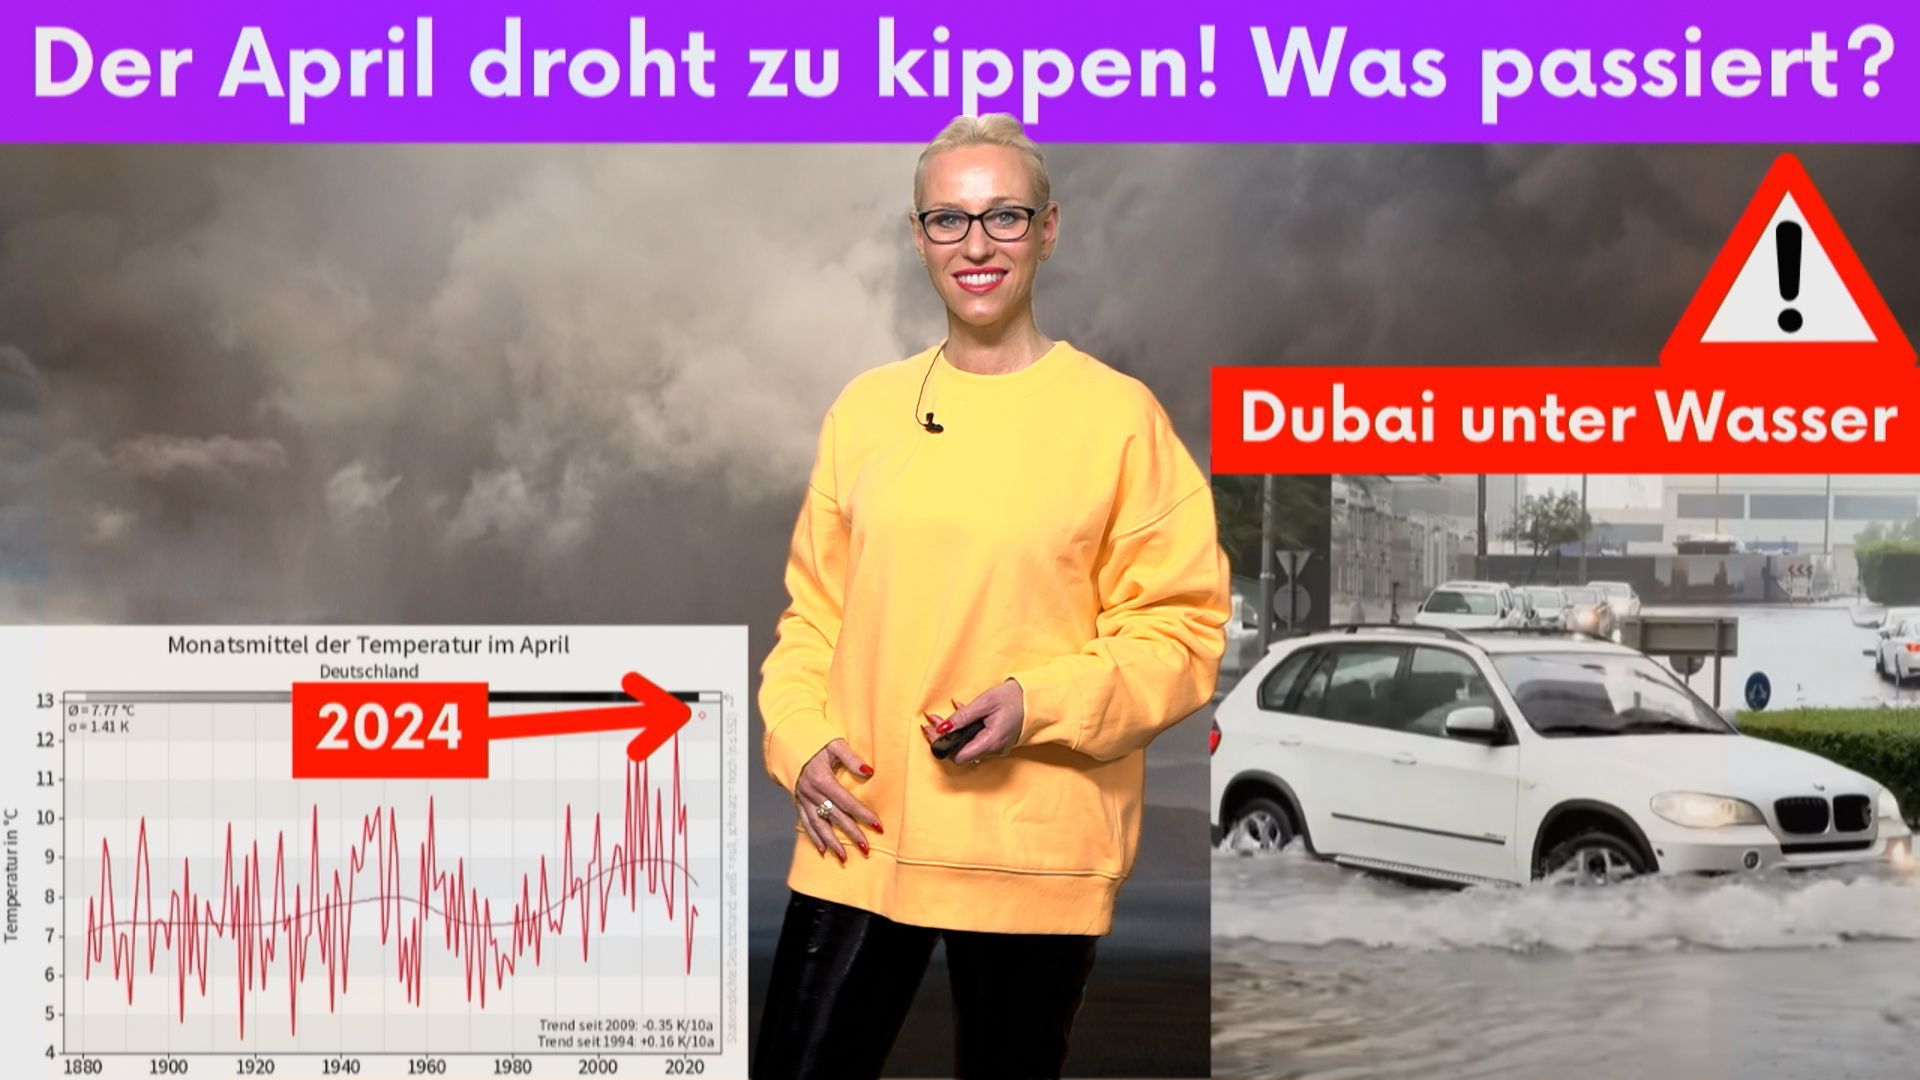 Extremwetter stürzt Dubai ins Chaos! Deutsche April-Kälte droht Langzeitprognosen zu kippen!